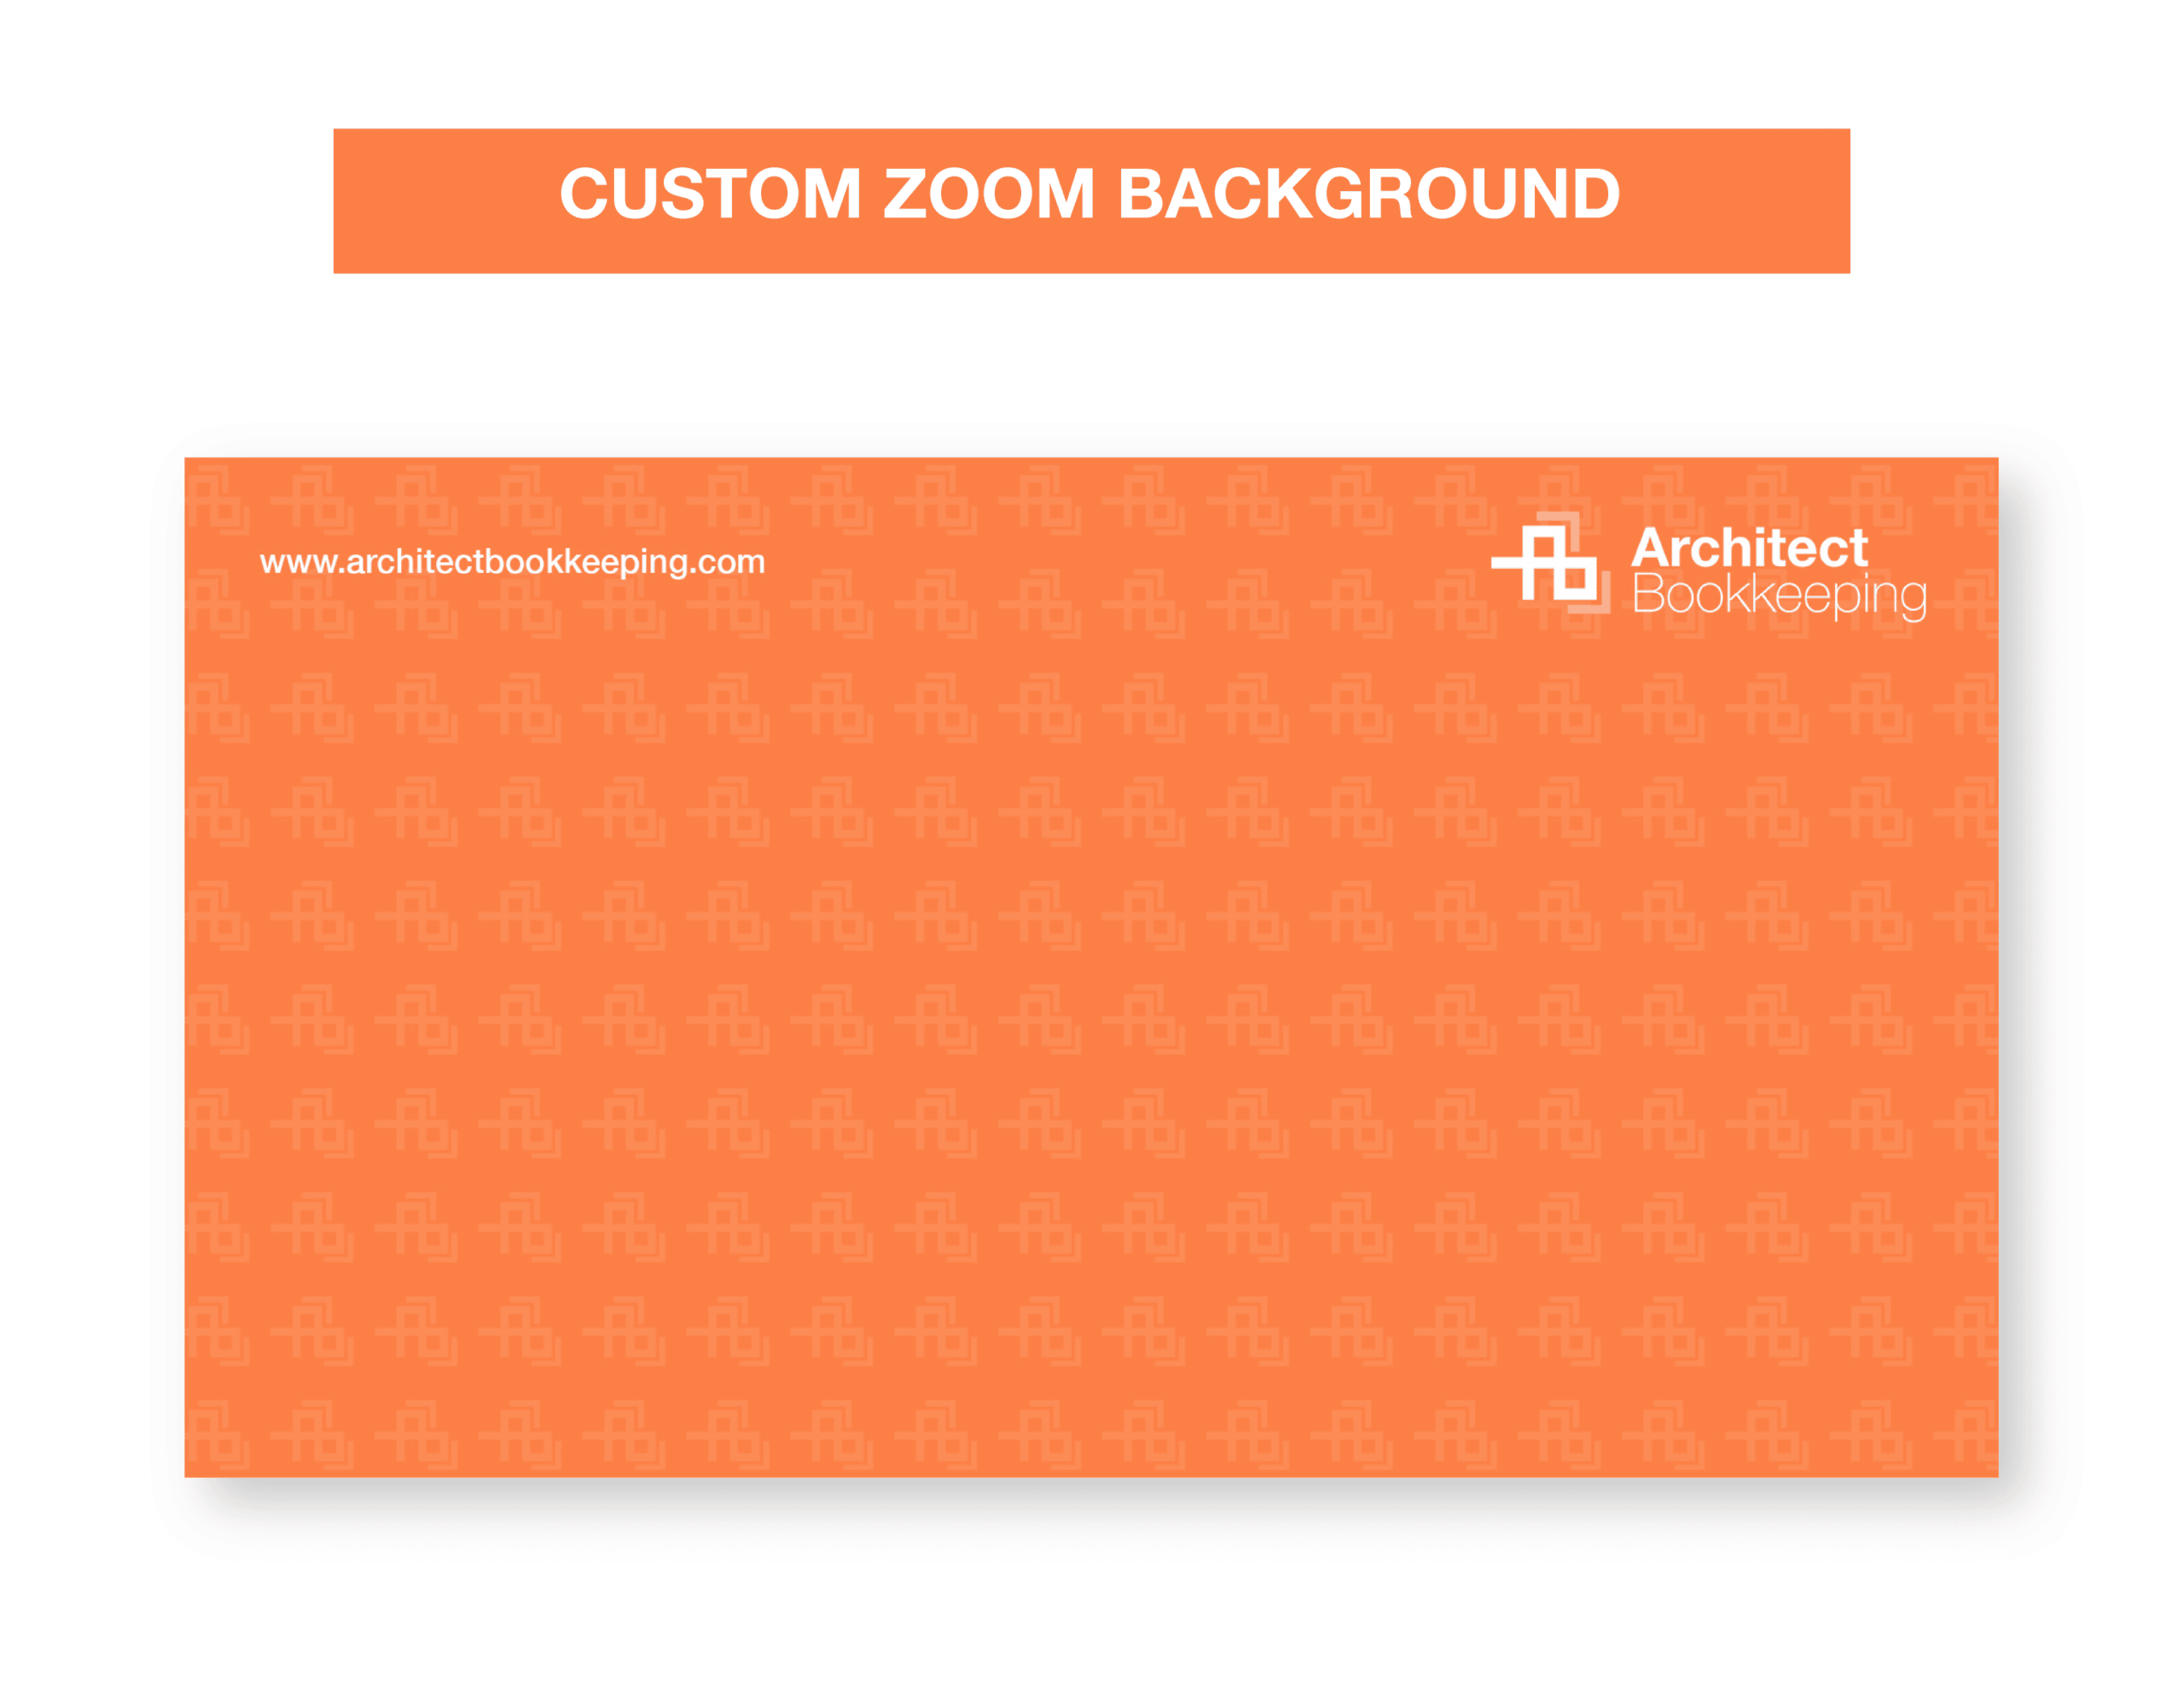 07ArchitectBookkeeping_Showcase_Custom Zoom Background